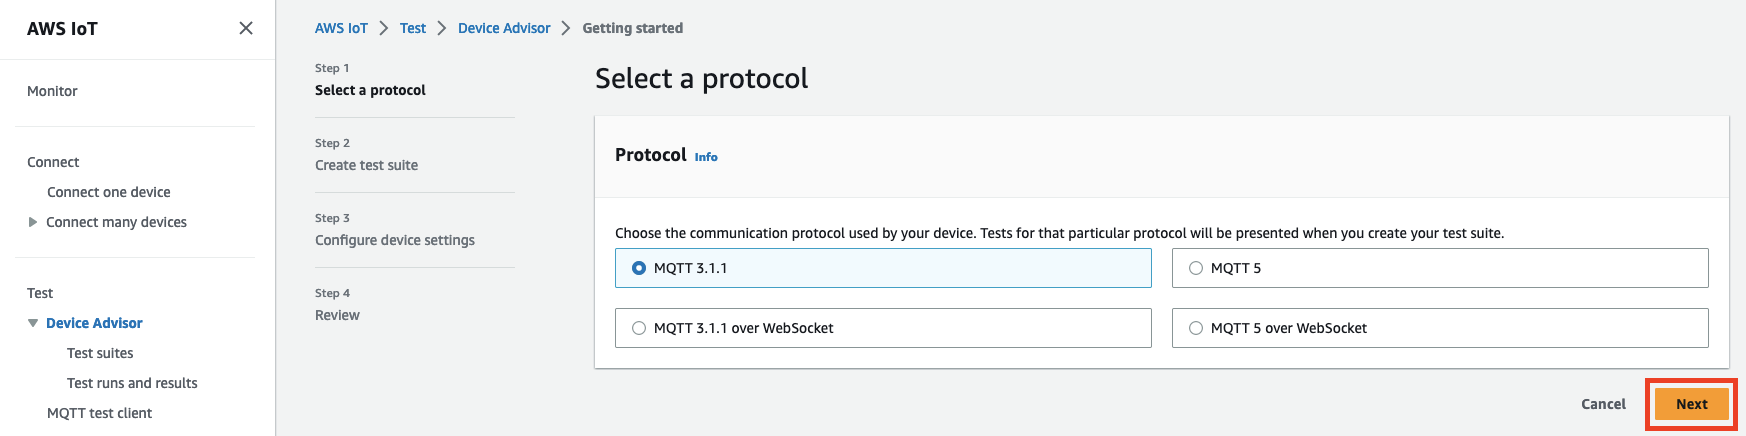 Antarmuka Device Advisor yang menampilkan opsi untuk memilih protokol komunikasi (MQTT 3.1.1, MQTT 3.1.1 over, MQTT 5 WebSocket, MQTT 5 over) untuk menguji perangkat IoT. WebSocket